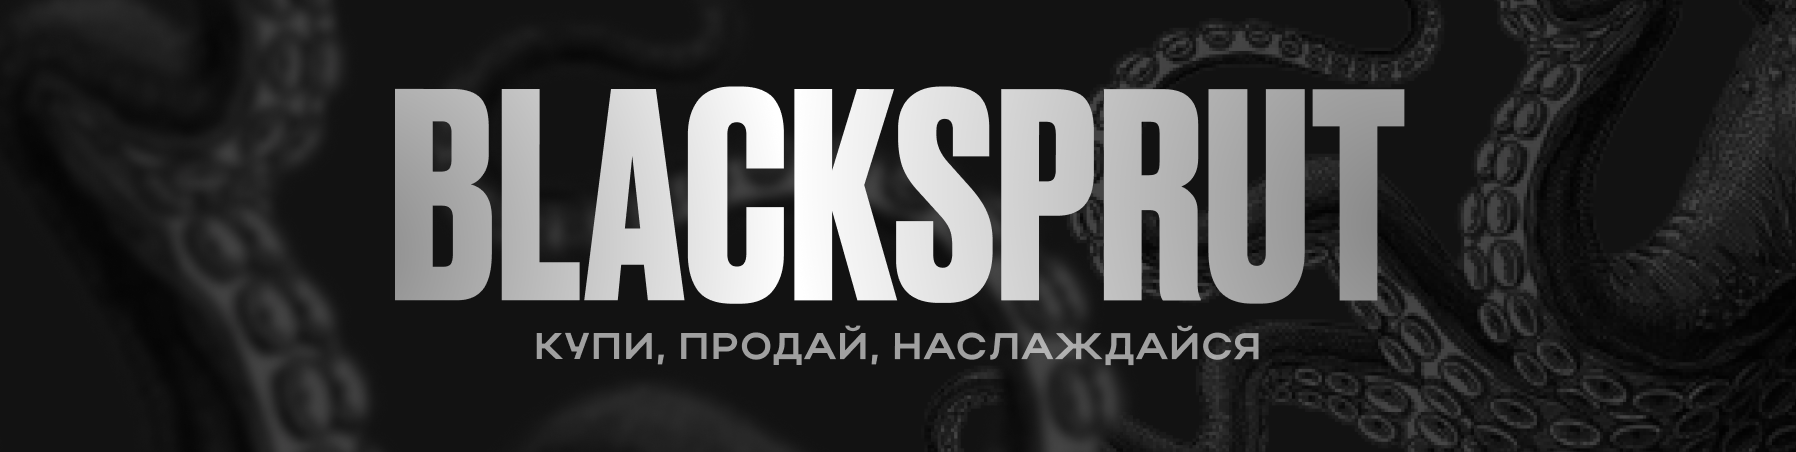 blacksprut с официального сайта даркнет